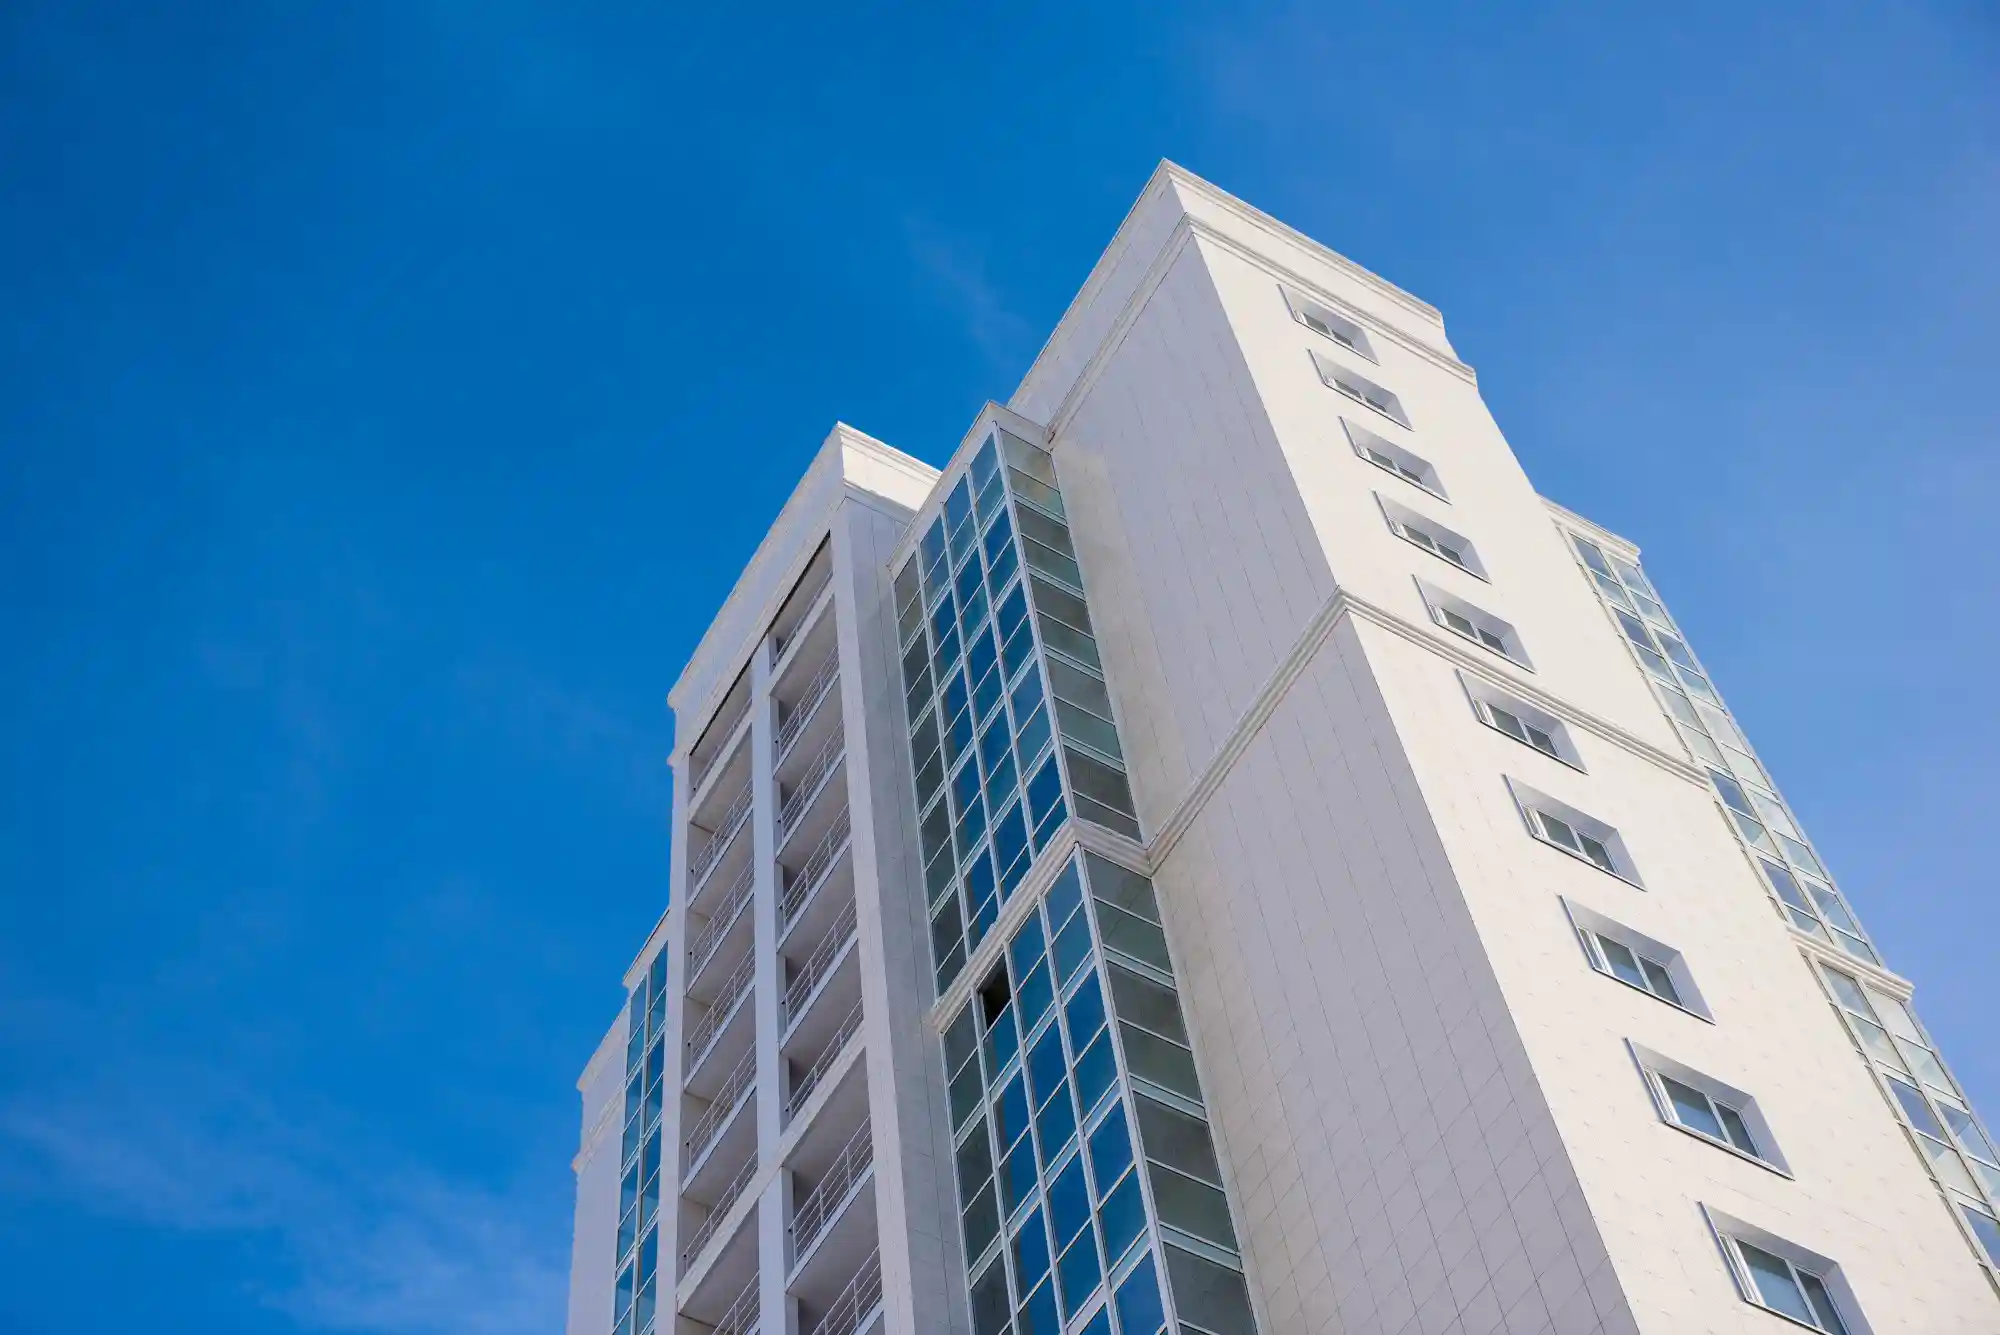 Fachada de condomínio: imagem de baixo para cima de um prédio branco com detalhes azuis, junto com o céu azul